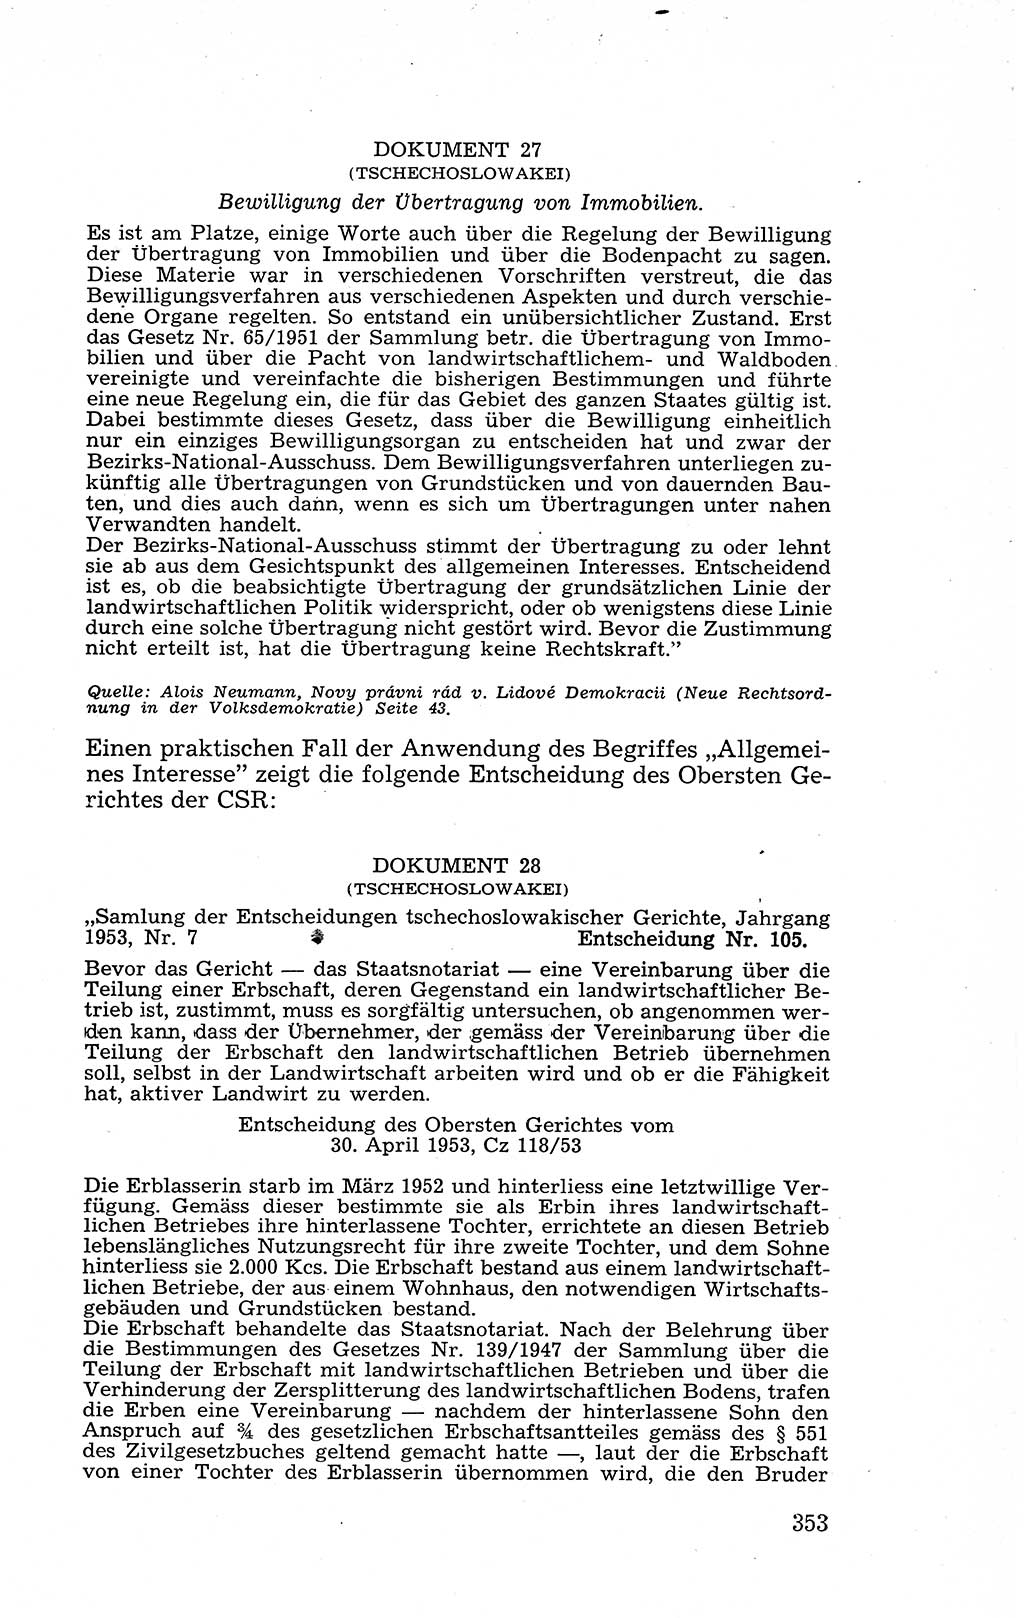 Recht in Fesseln, Dokumente, Internationale Juristen-Kommission [Bundesrepublik Deutschland (BRD)] 1955, Seite 353 (R. Dok. IJK BRD 1955, S. 353)